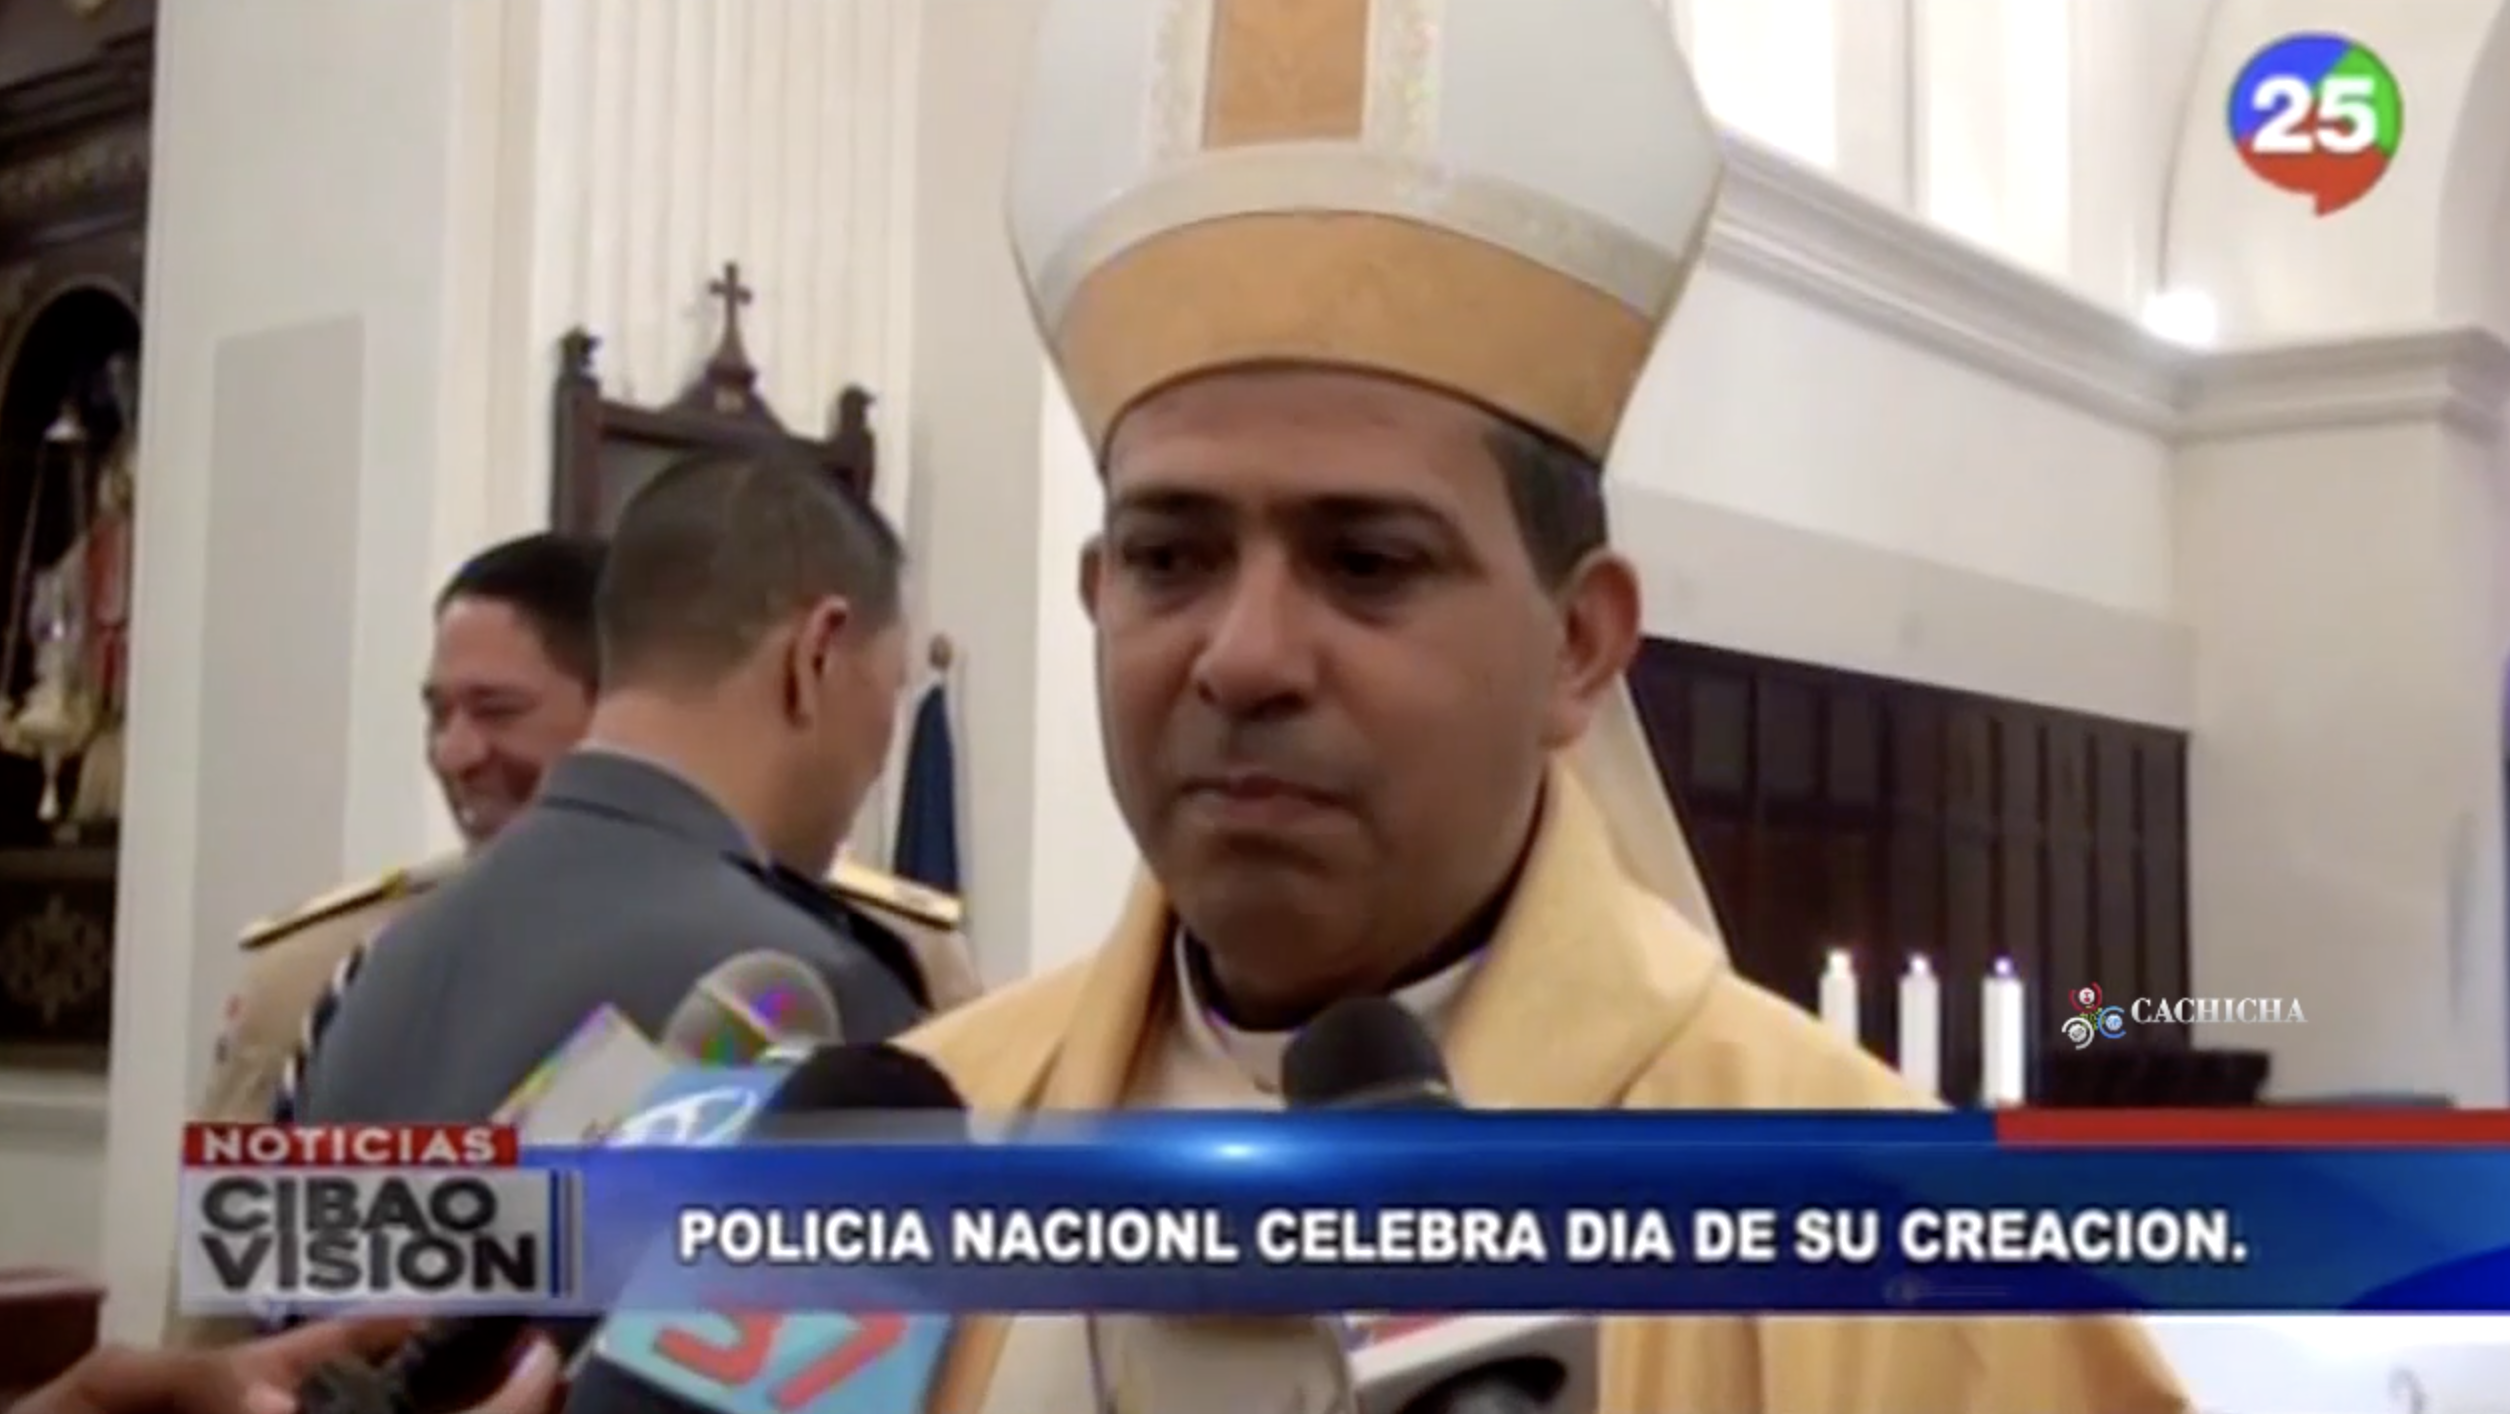 Iglesia Católica Pide Que Se Estudie Y Se Investigue Los Perfiles De Los Integrantes De La Policía Nacional